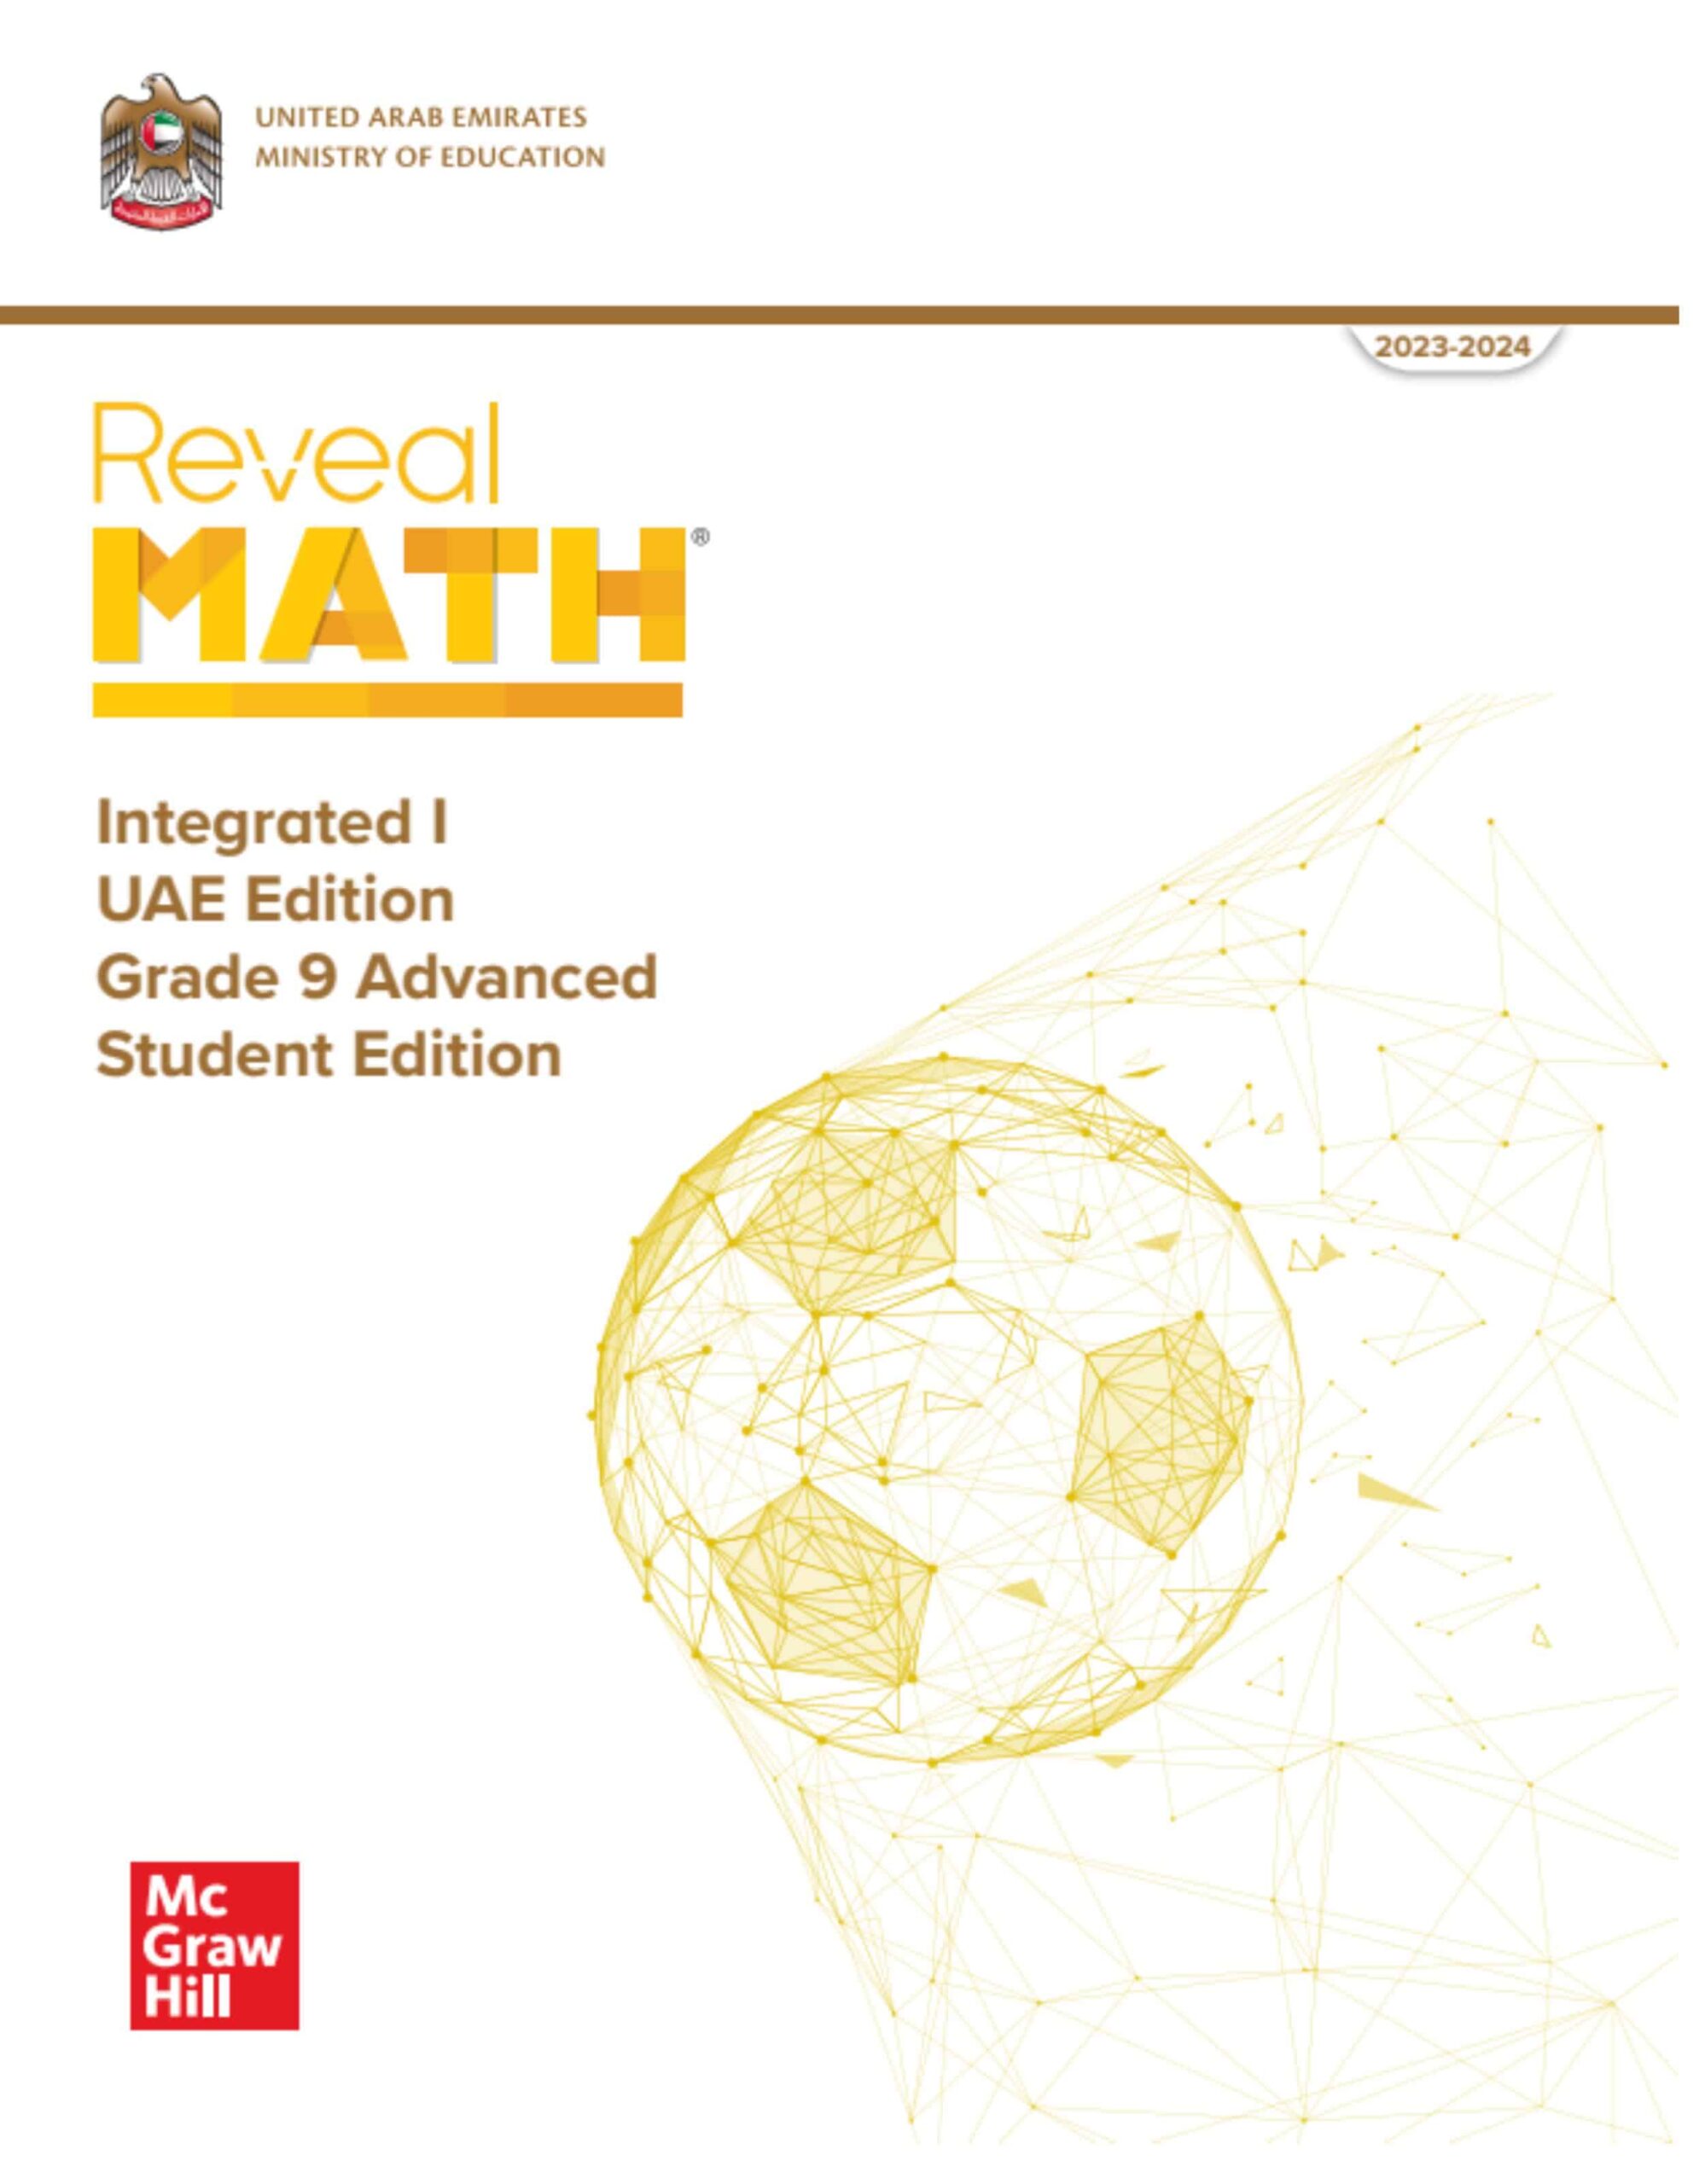 كتاب الطالب الرياضيات المتكاملة الصف التاسع Reveal متقدم الفصل الدراسي الثاني 2023-2024